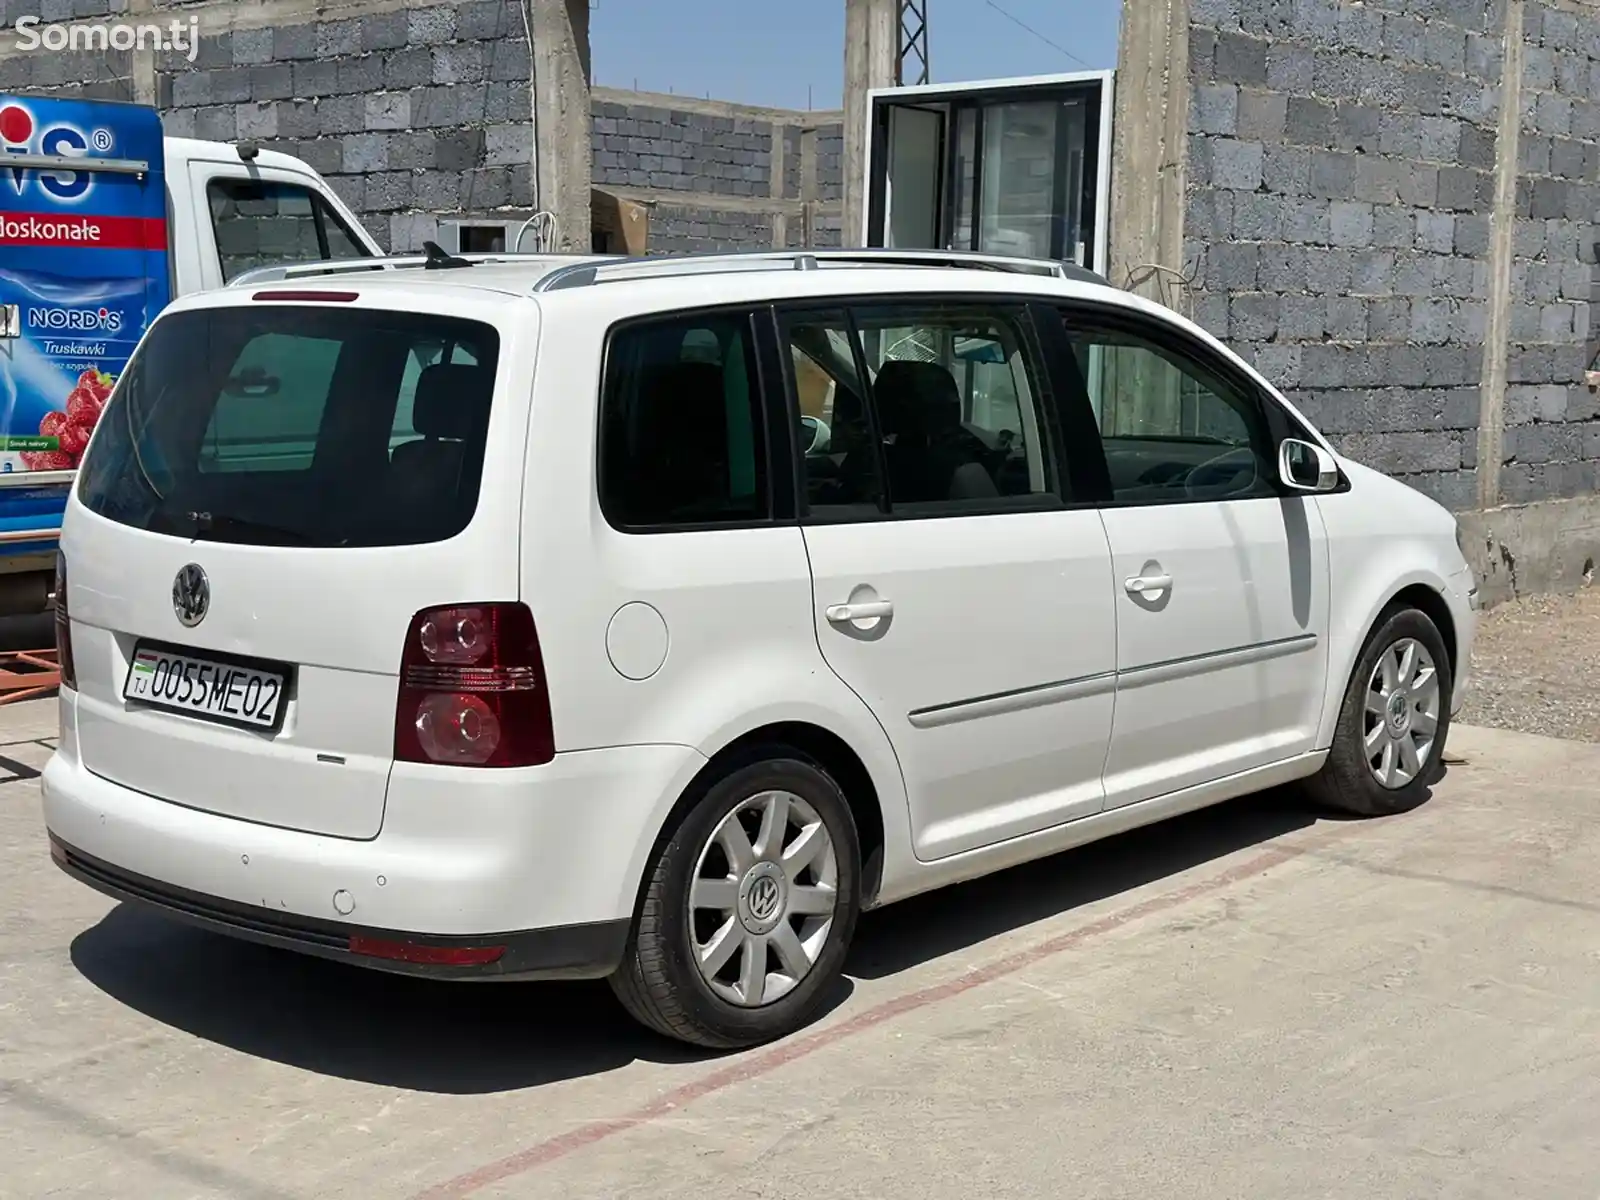 Volkswagen Touran, 2007-2